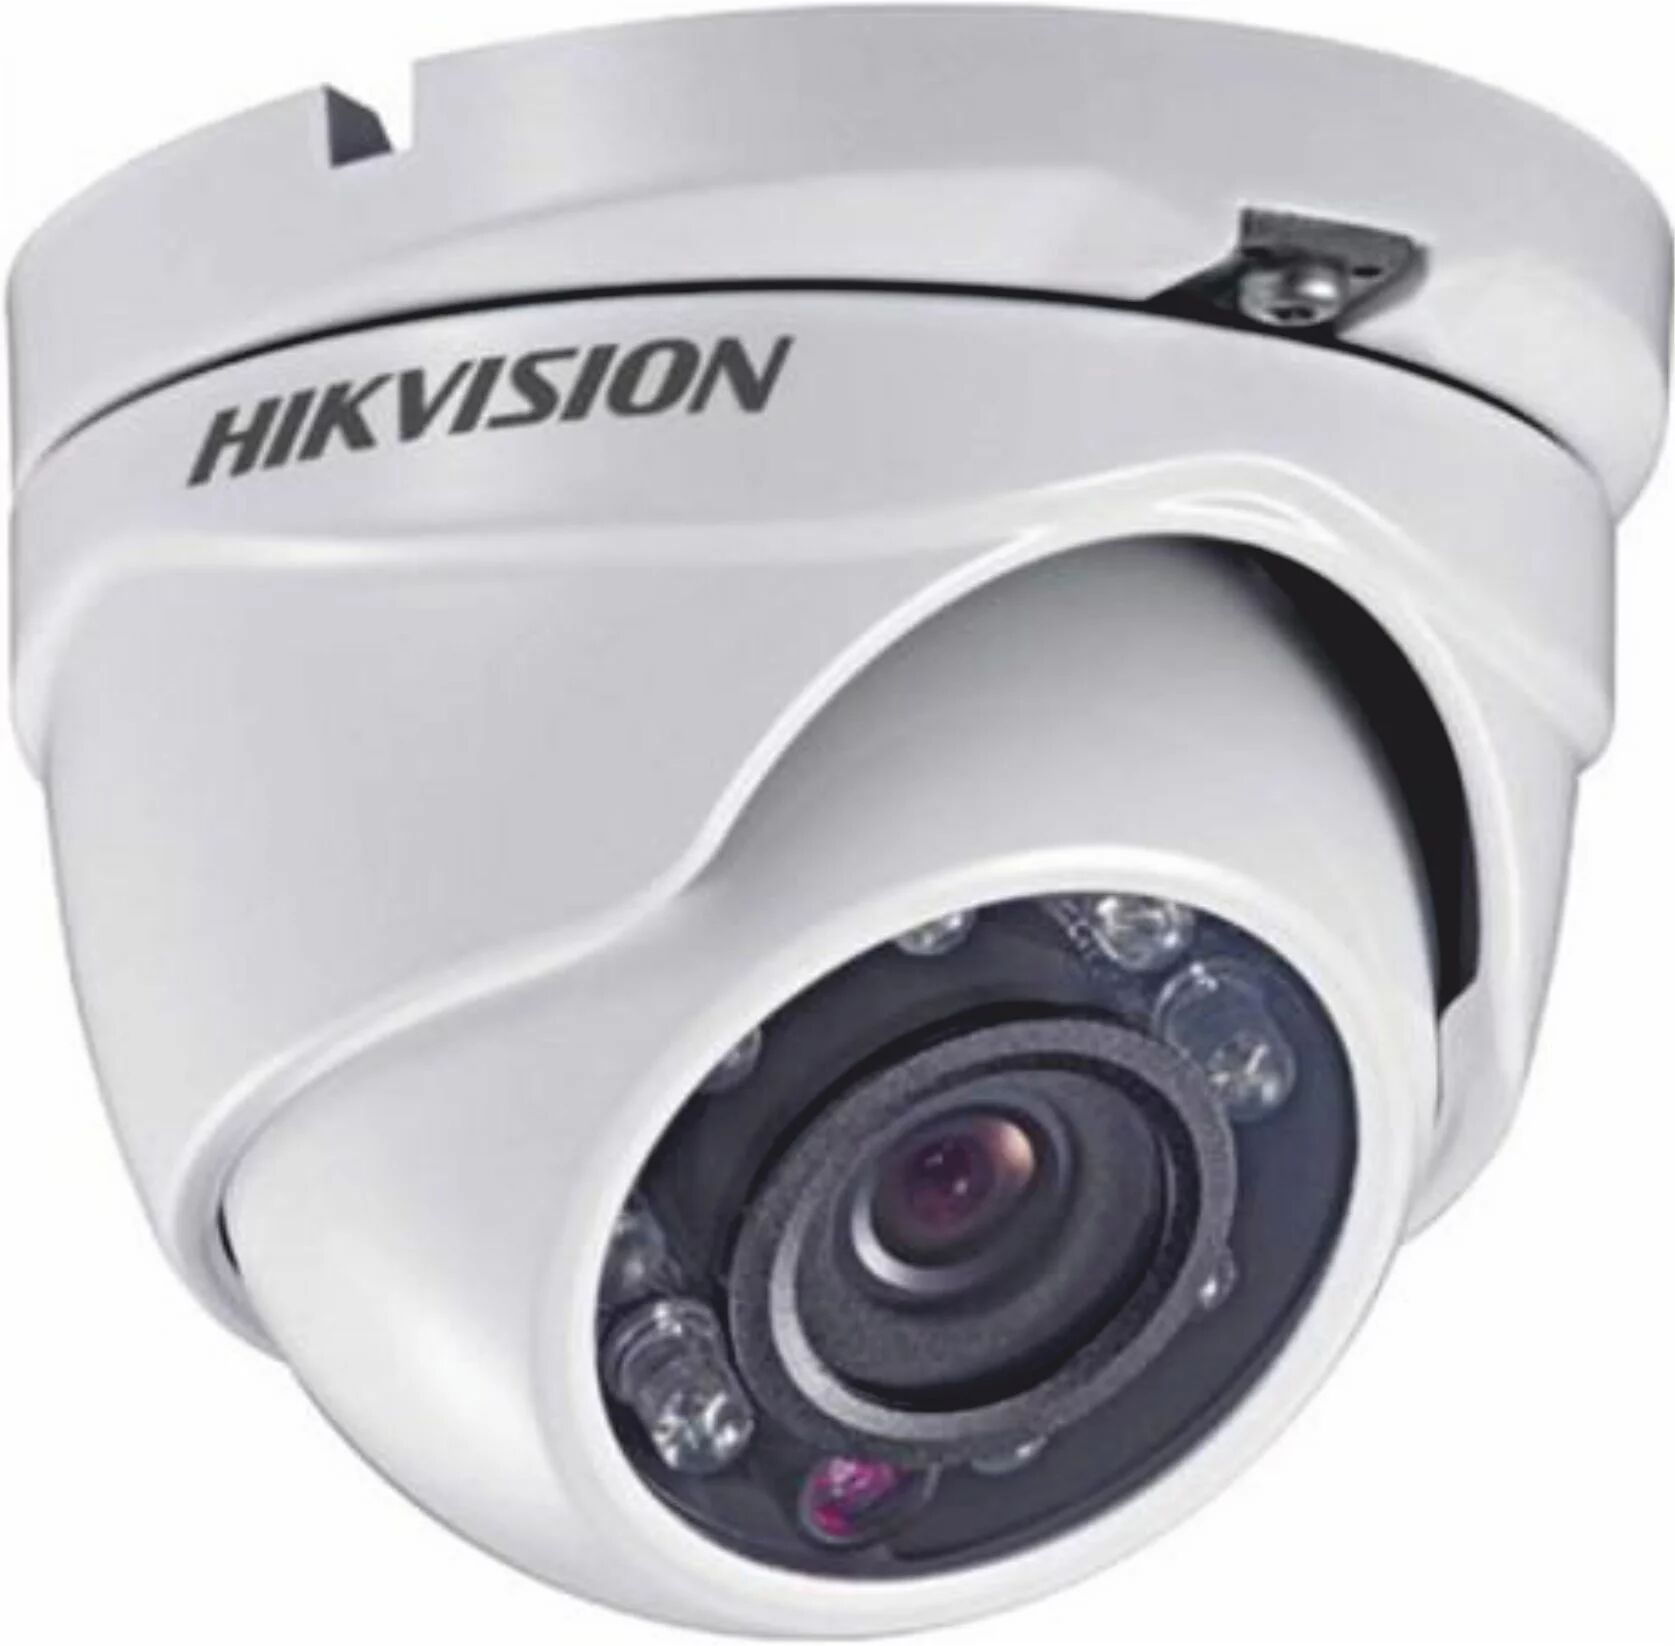 Telecamera Dome Hikvision Ds-2ce56d0t-Irmf Tvi 2mp Ottica 2,8mm 300613473  - Hik 300613473